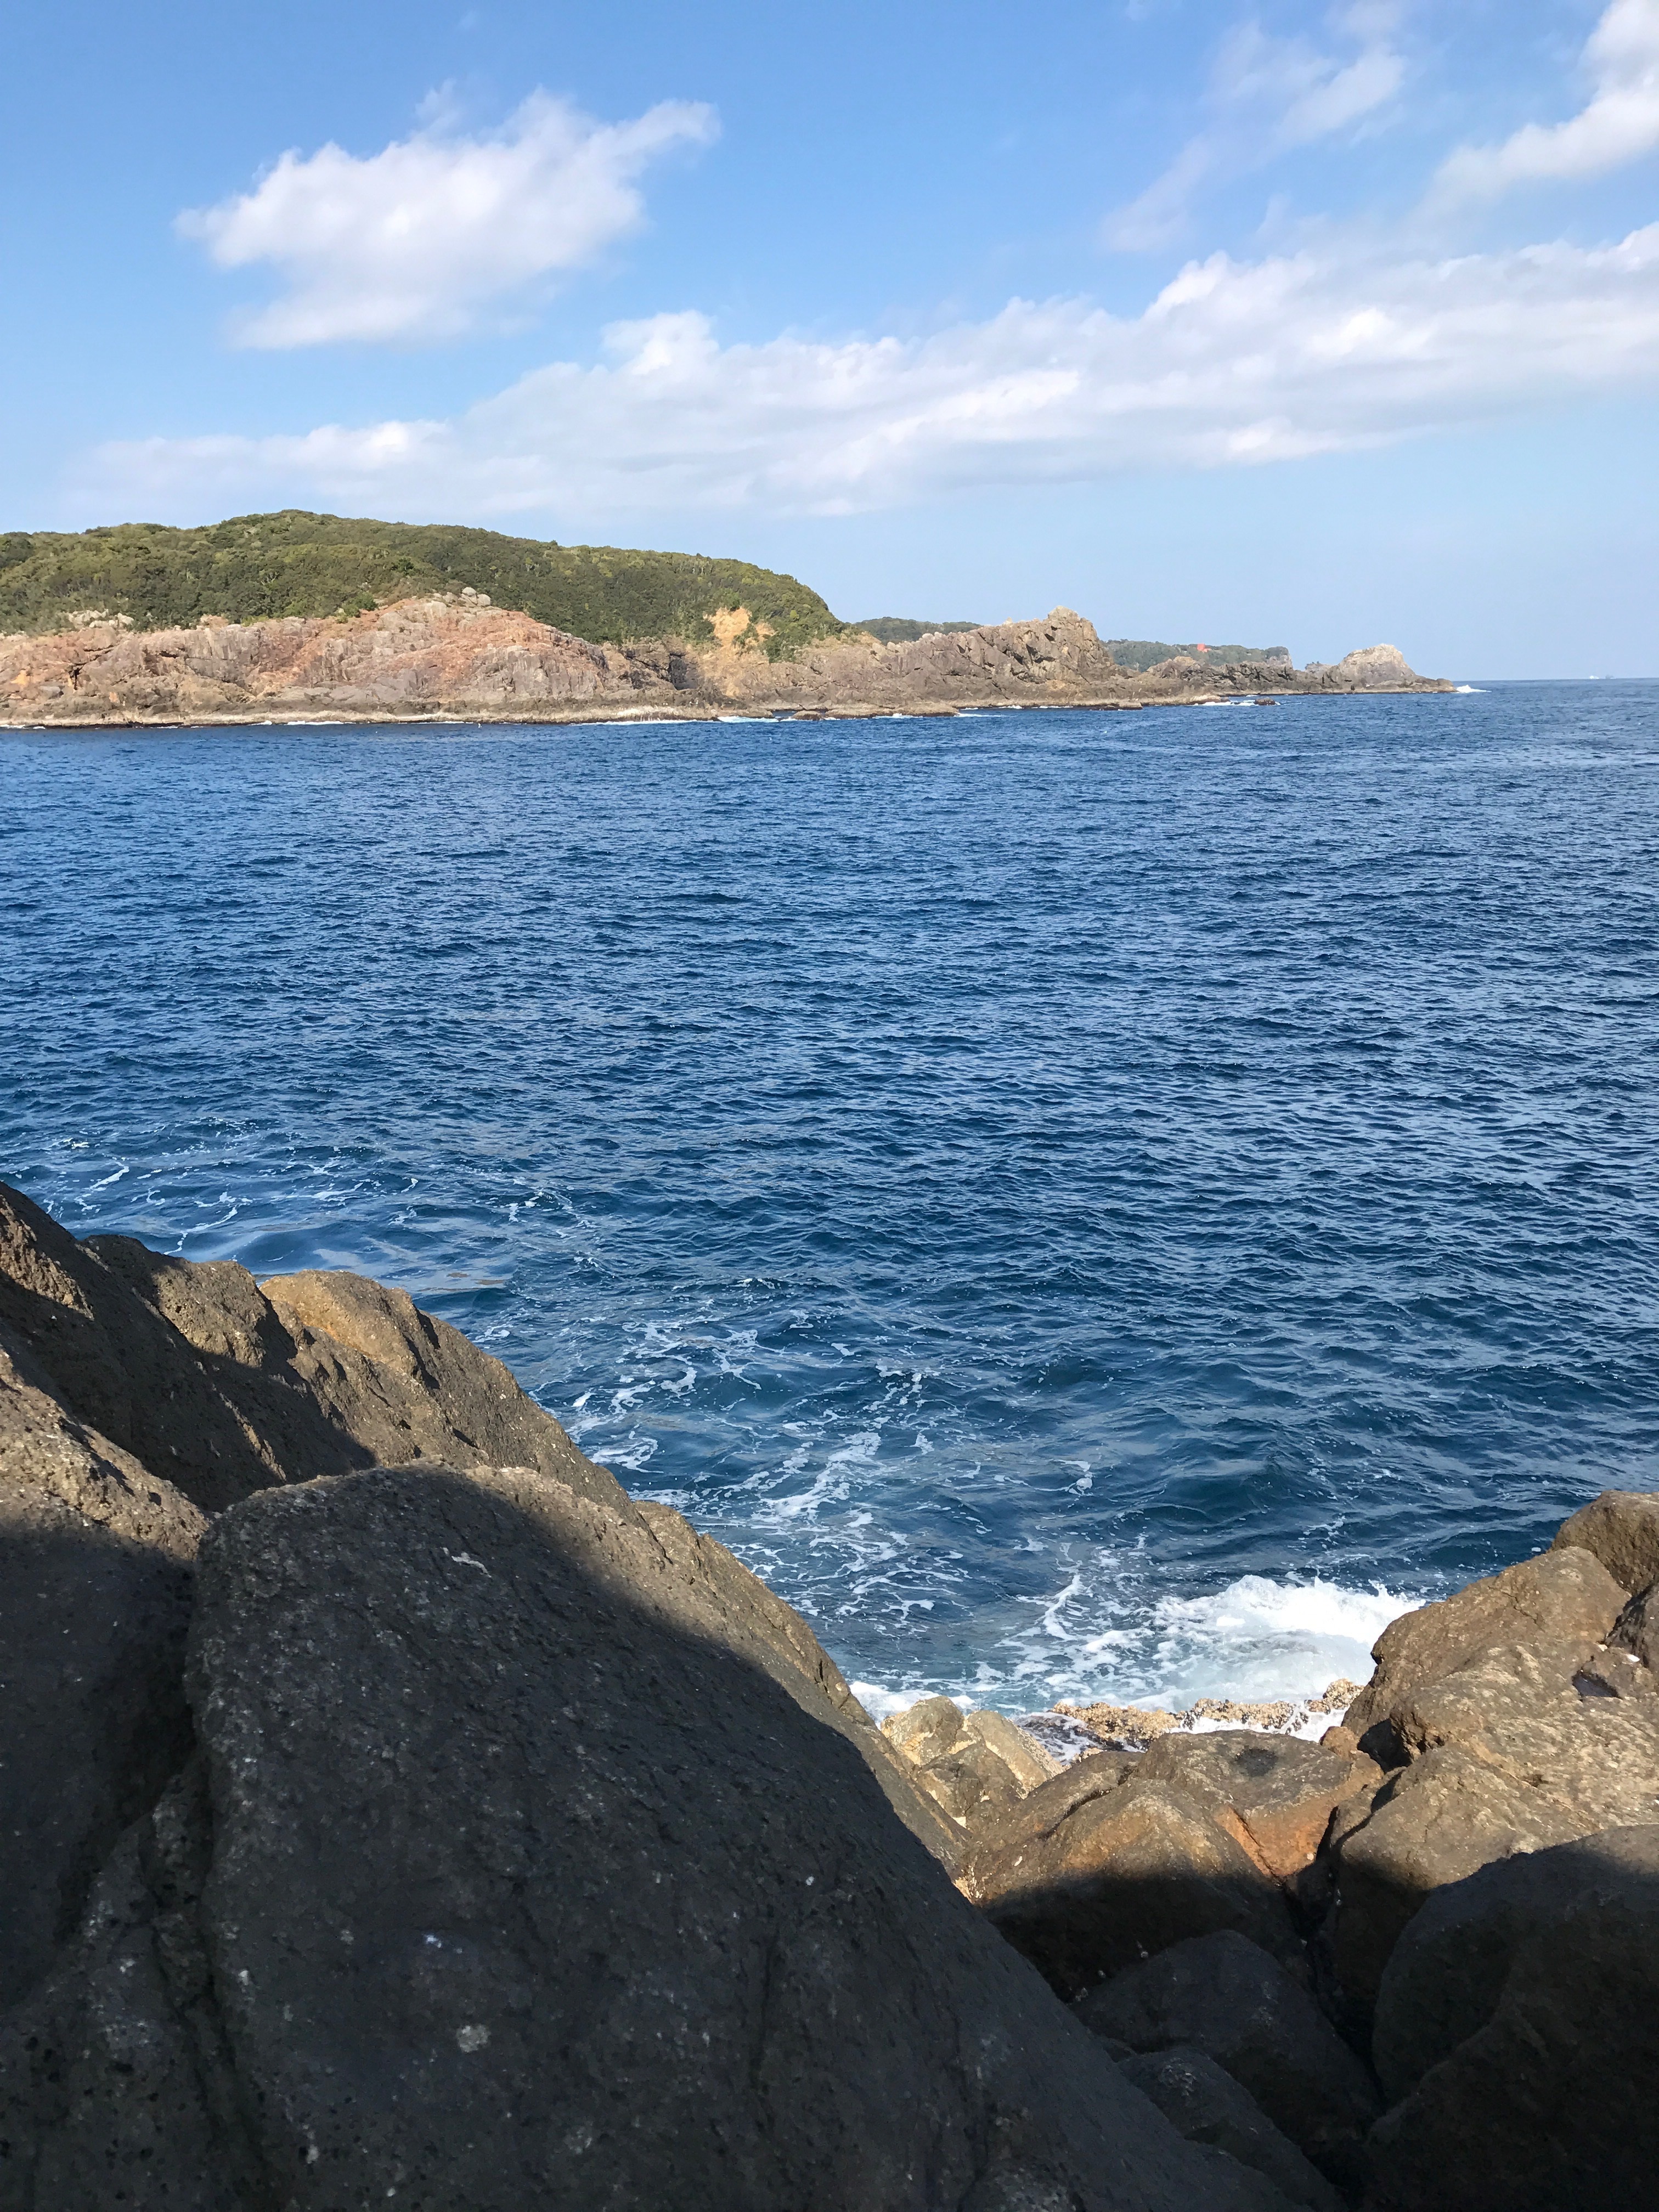 串本大島の北西風に強いショアジギングとエギングポイント須江崎ズログチの釣り場紹介、和歌山県南紀串本大島のドン深地磯